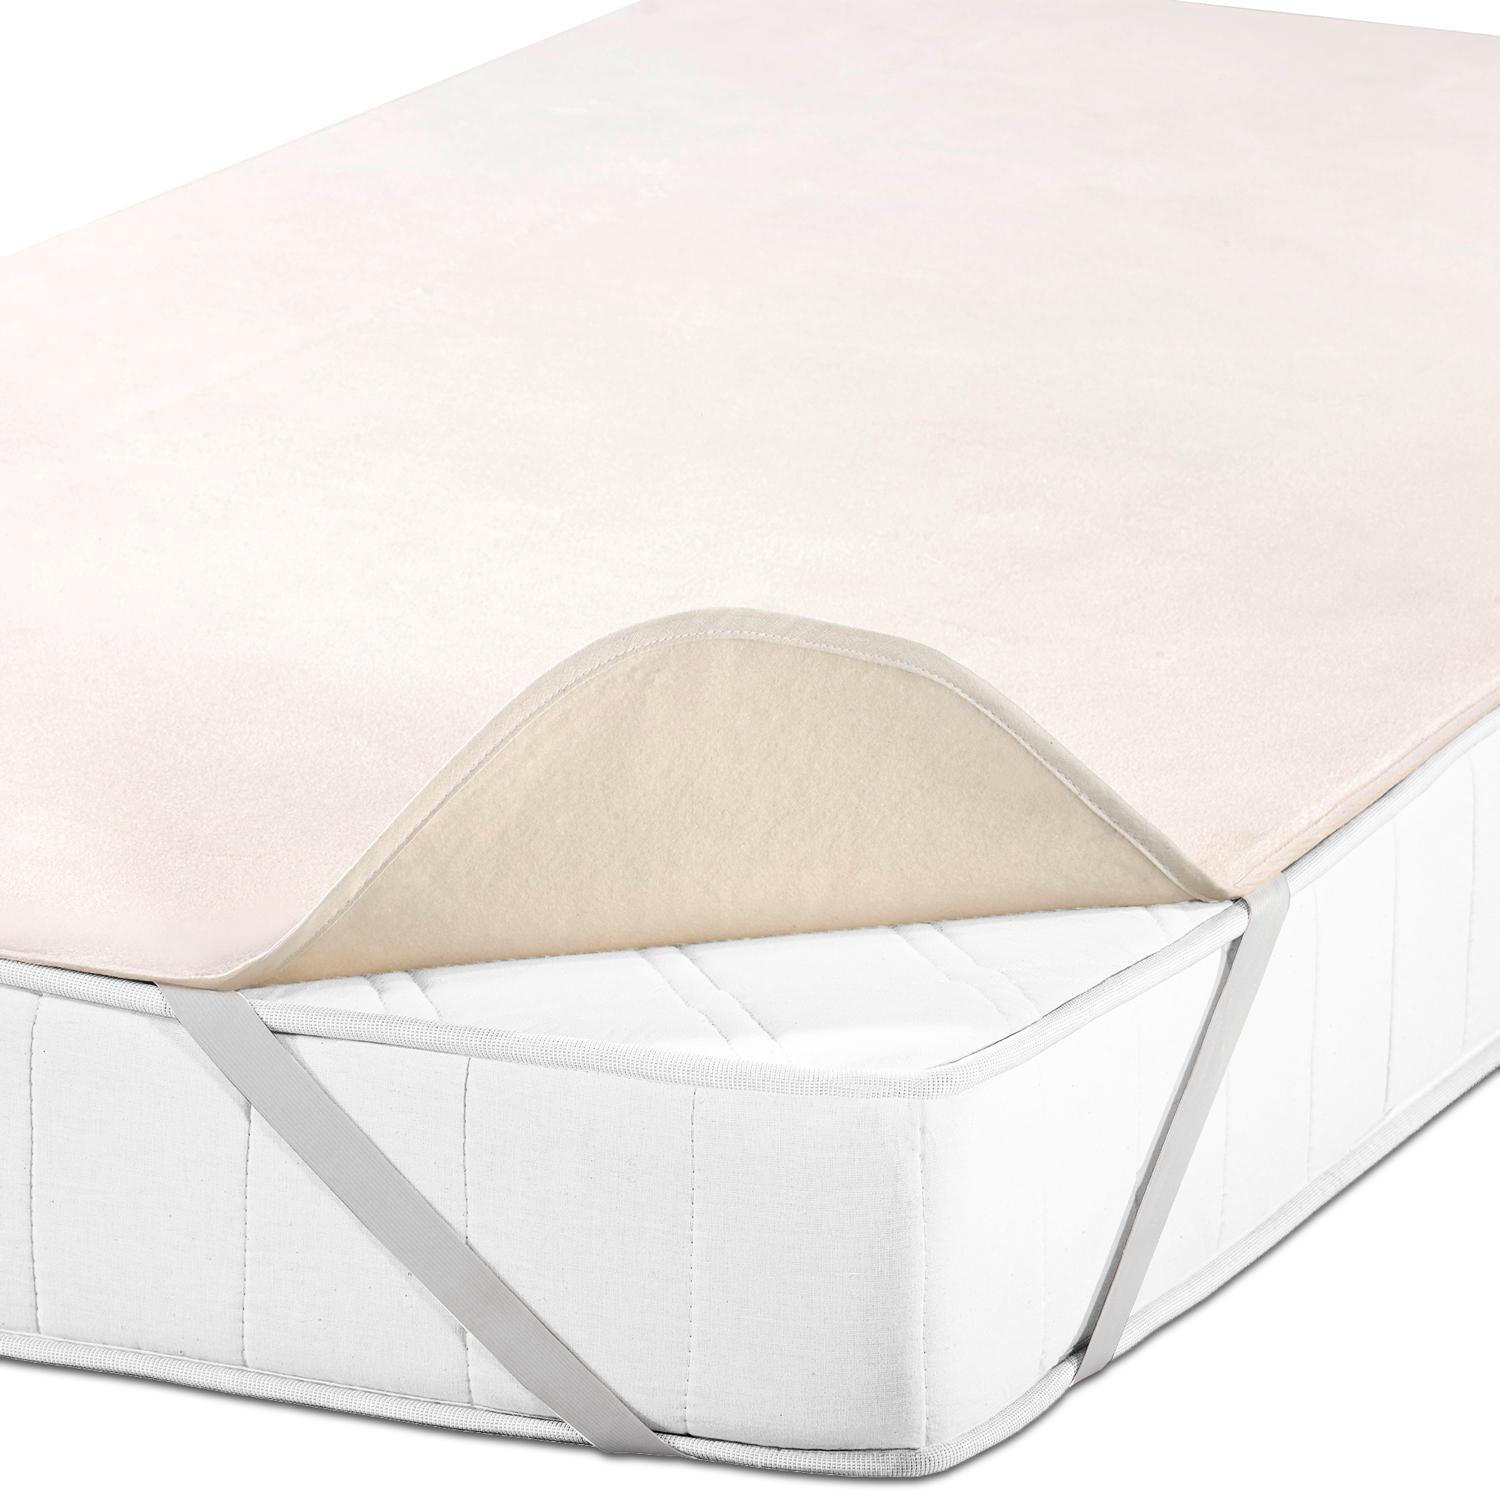 Chránič matrace Sleezzz Basic Molton 90 x 190 cm, chránič matrace ze 100% bavlny, přírodní barvy, pevné napětí